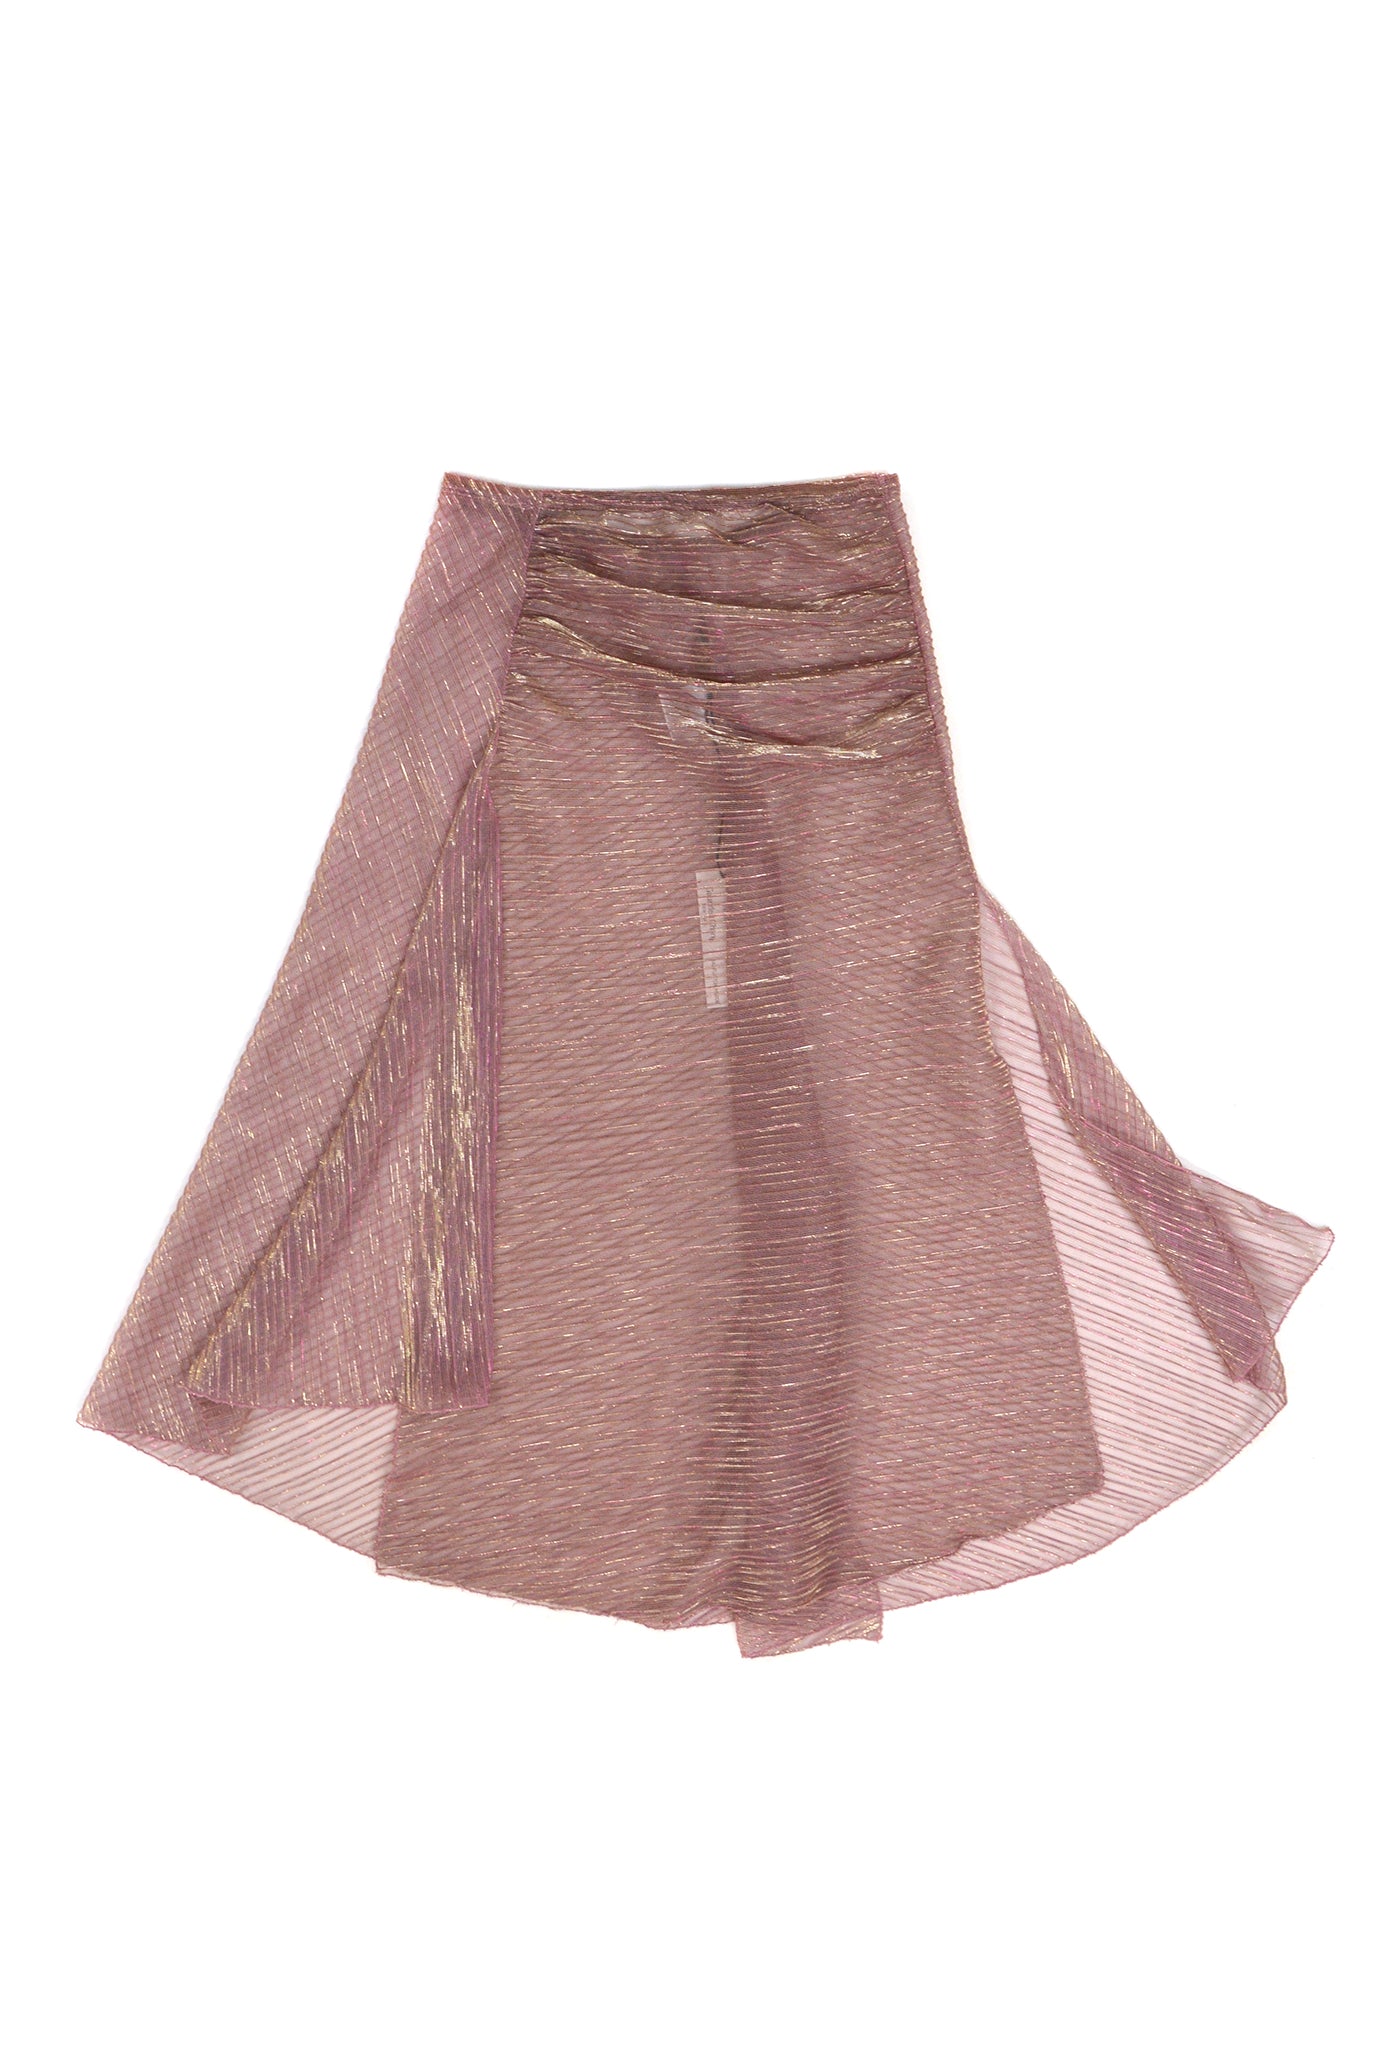 Gauntlett Cheng Asymmetric Skirt, Sheer Pink